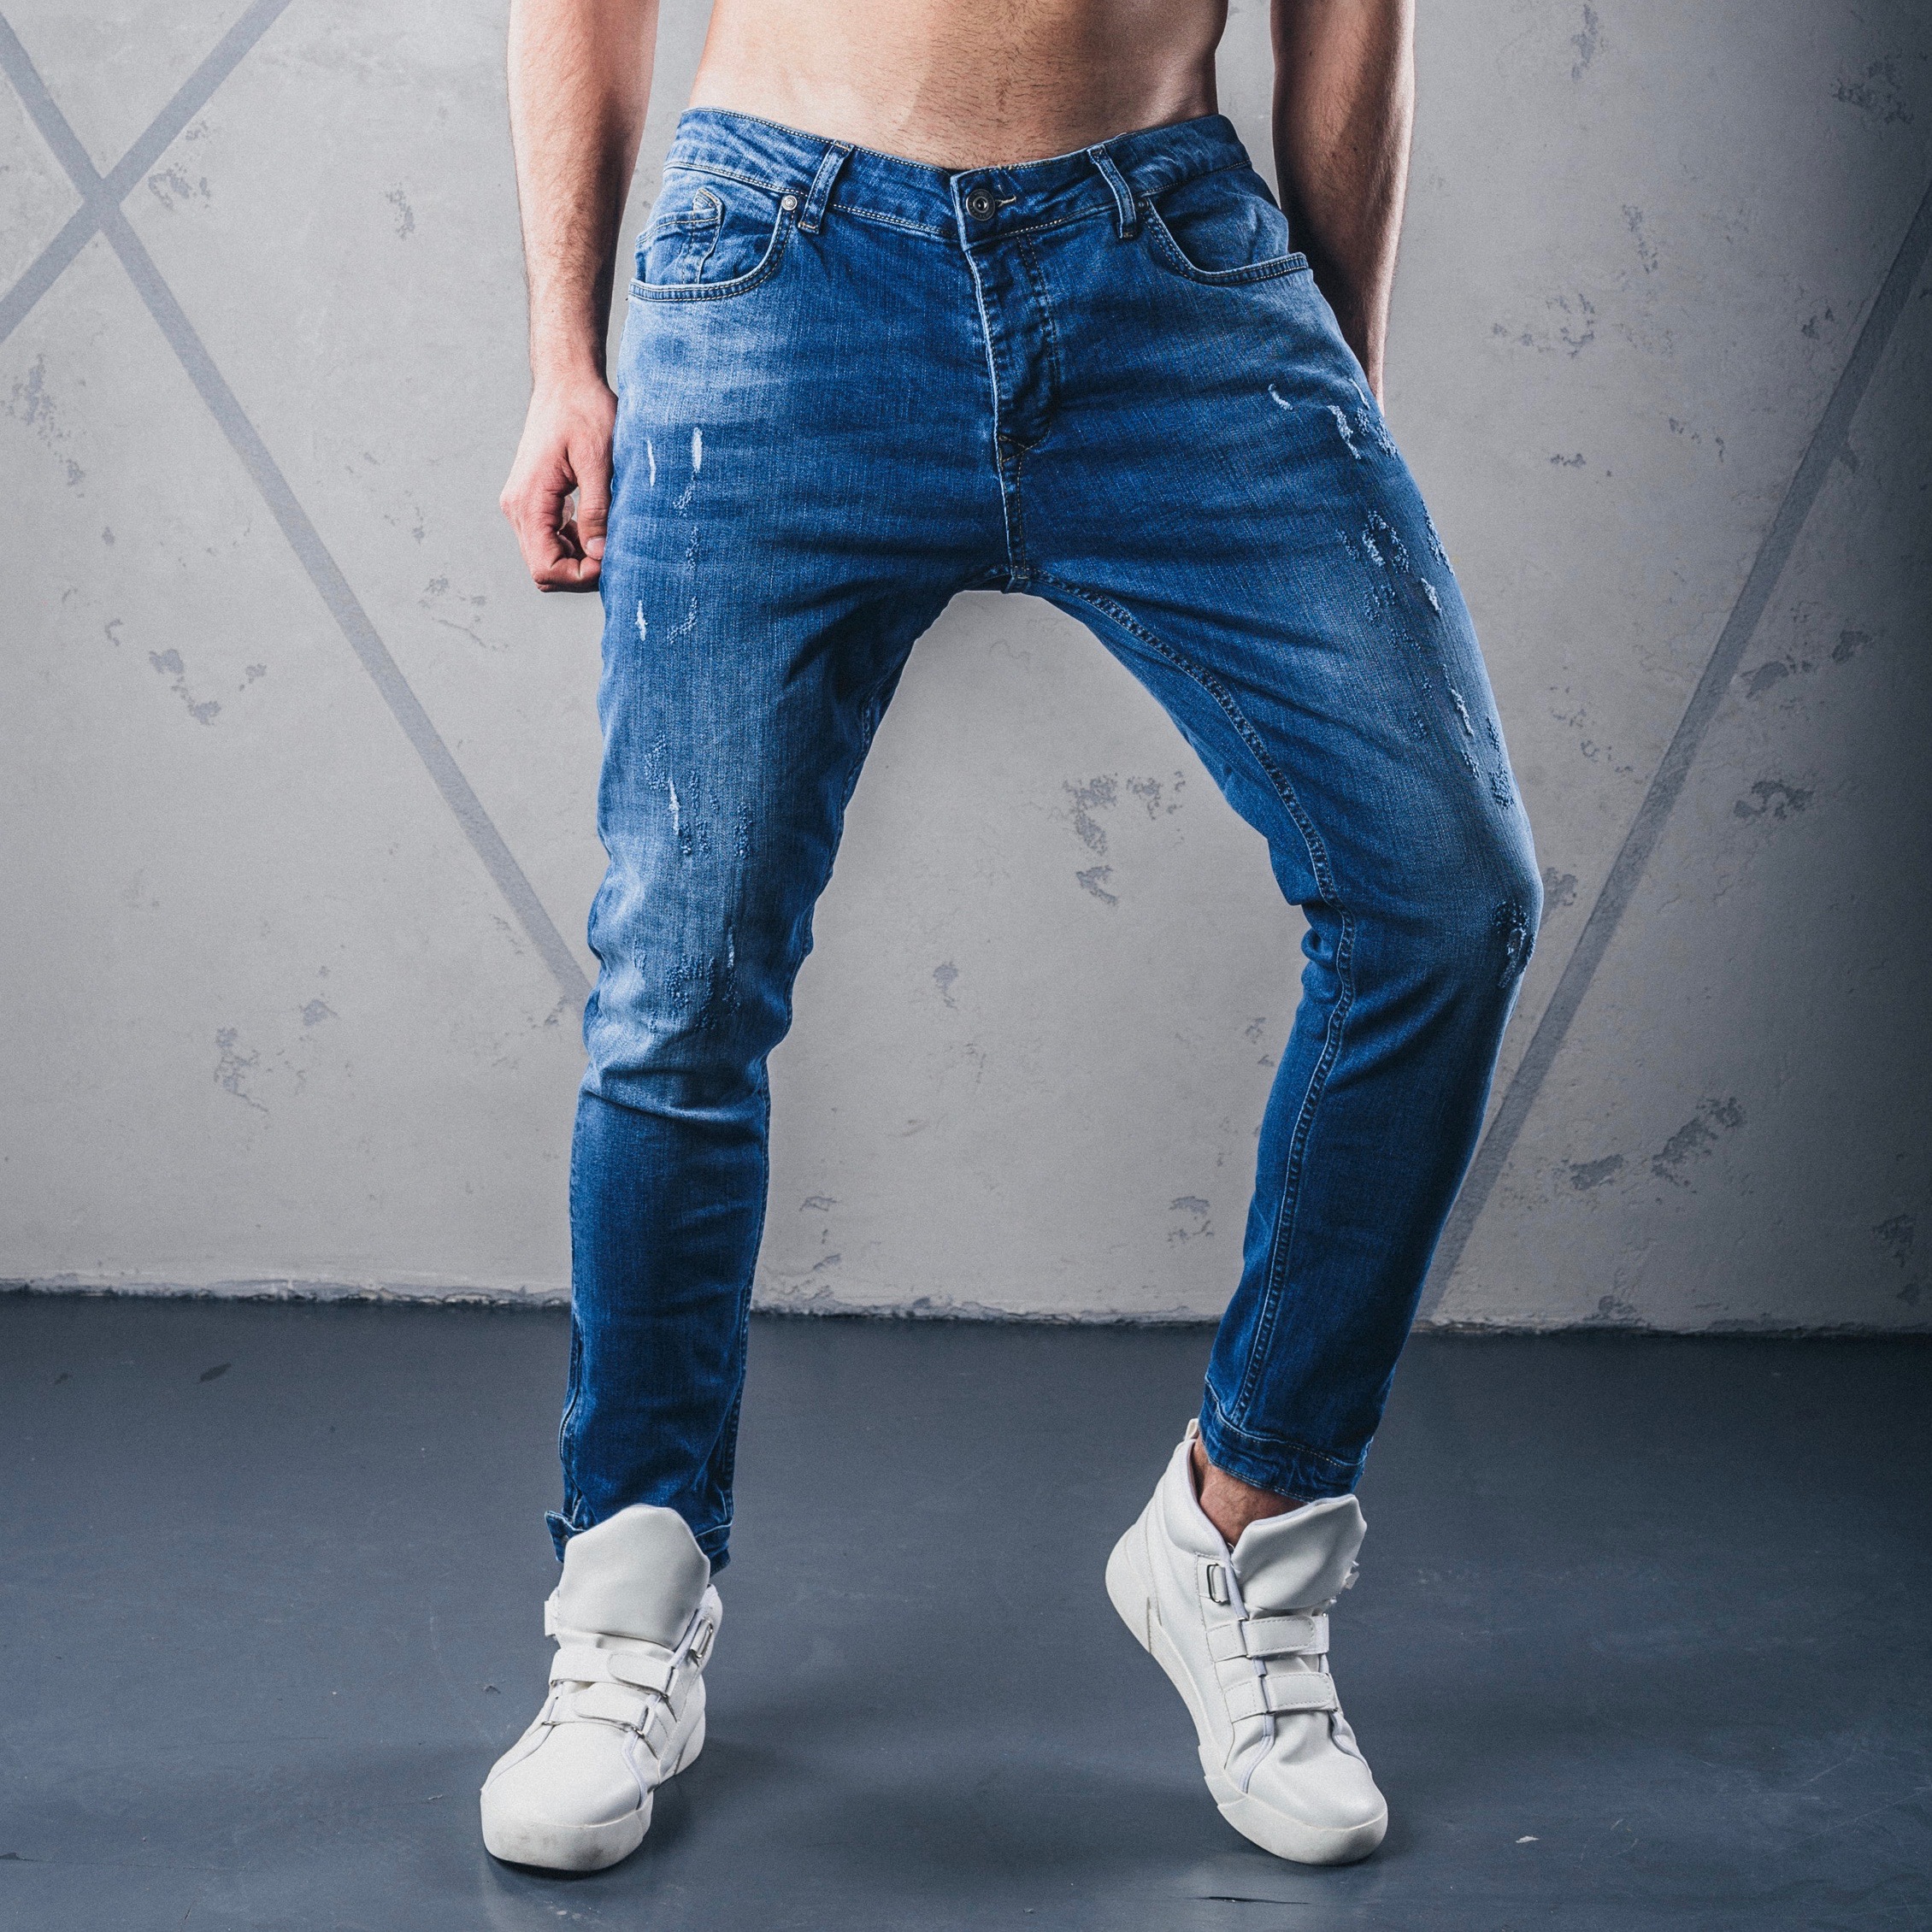 мужские джинсы резинки фото